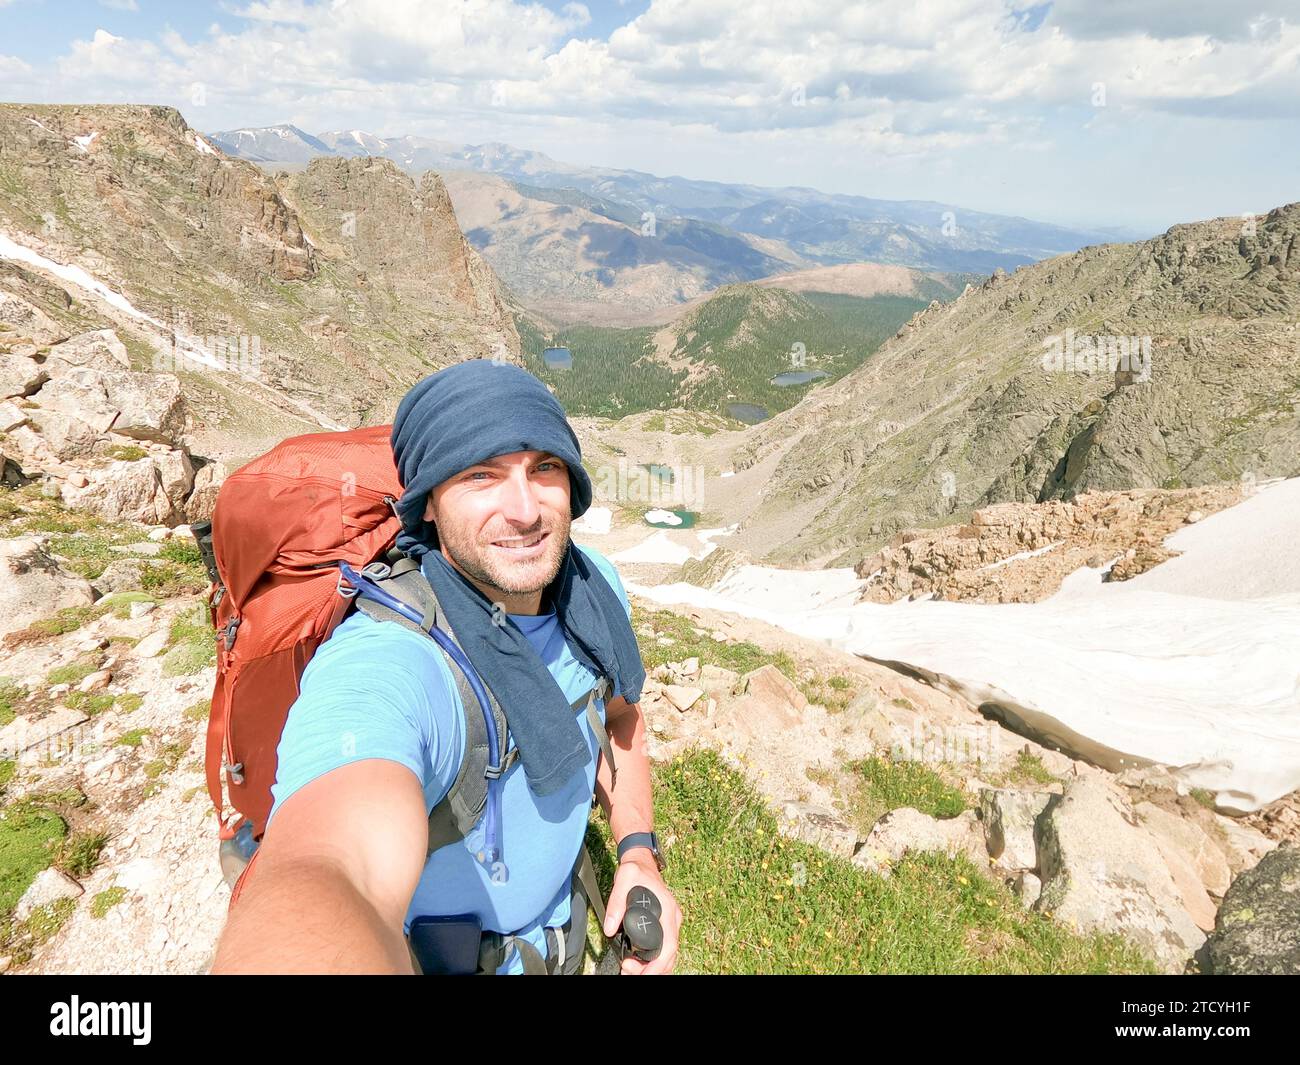 Ein männlicher Wanderer macht ein Selfie vor dem Hintergrund der weitläufigen Bergaussichten im Rocky Mountain National Park. Stockfoto